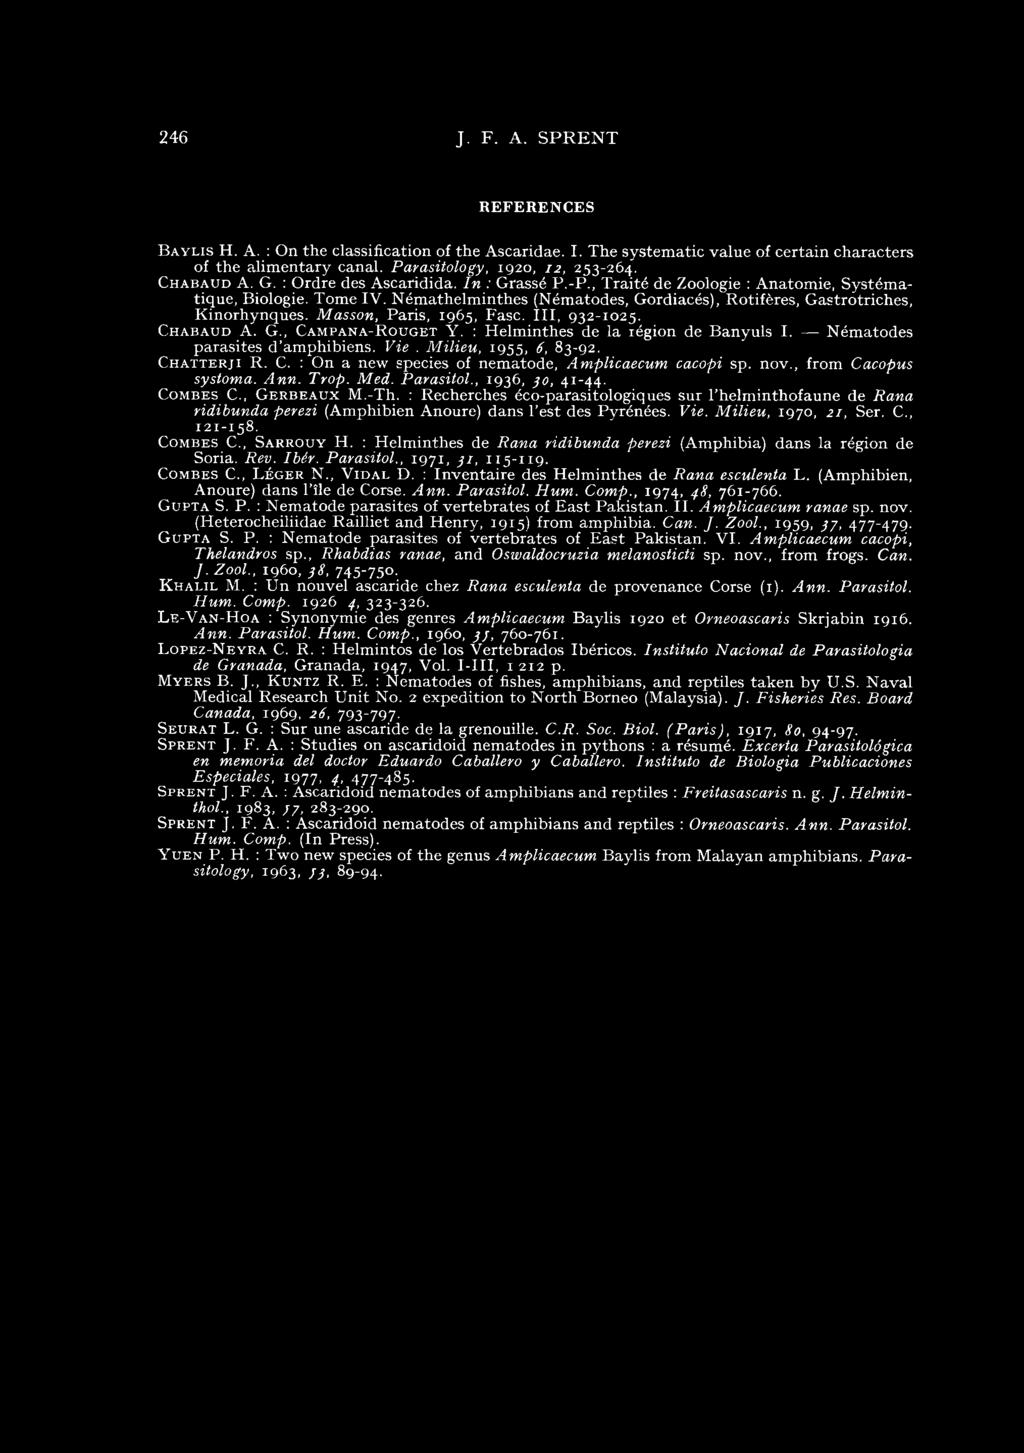 Masson, Paris, 1965, Fase. III, 932-1025. Chabaud A. G., Campana-Rouget Y. : Helminthes de la région de Banyuls I. Nématodes parasites d amphibiens. Vie. Milieu, 1955, 6, 83-92. Chatterji R. C. : On a new species of nematode, Amplicaecum cacopi sp.